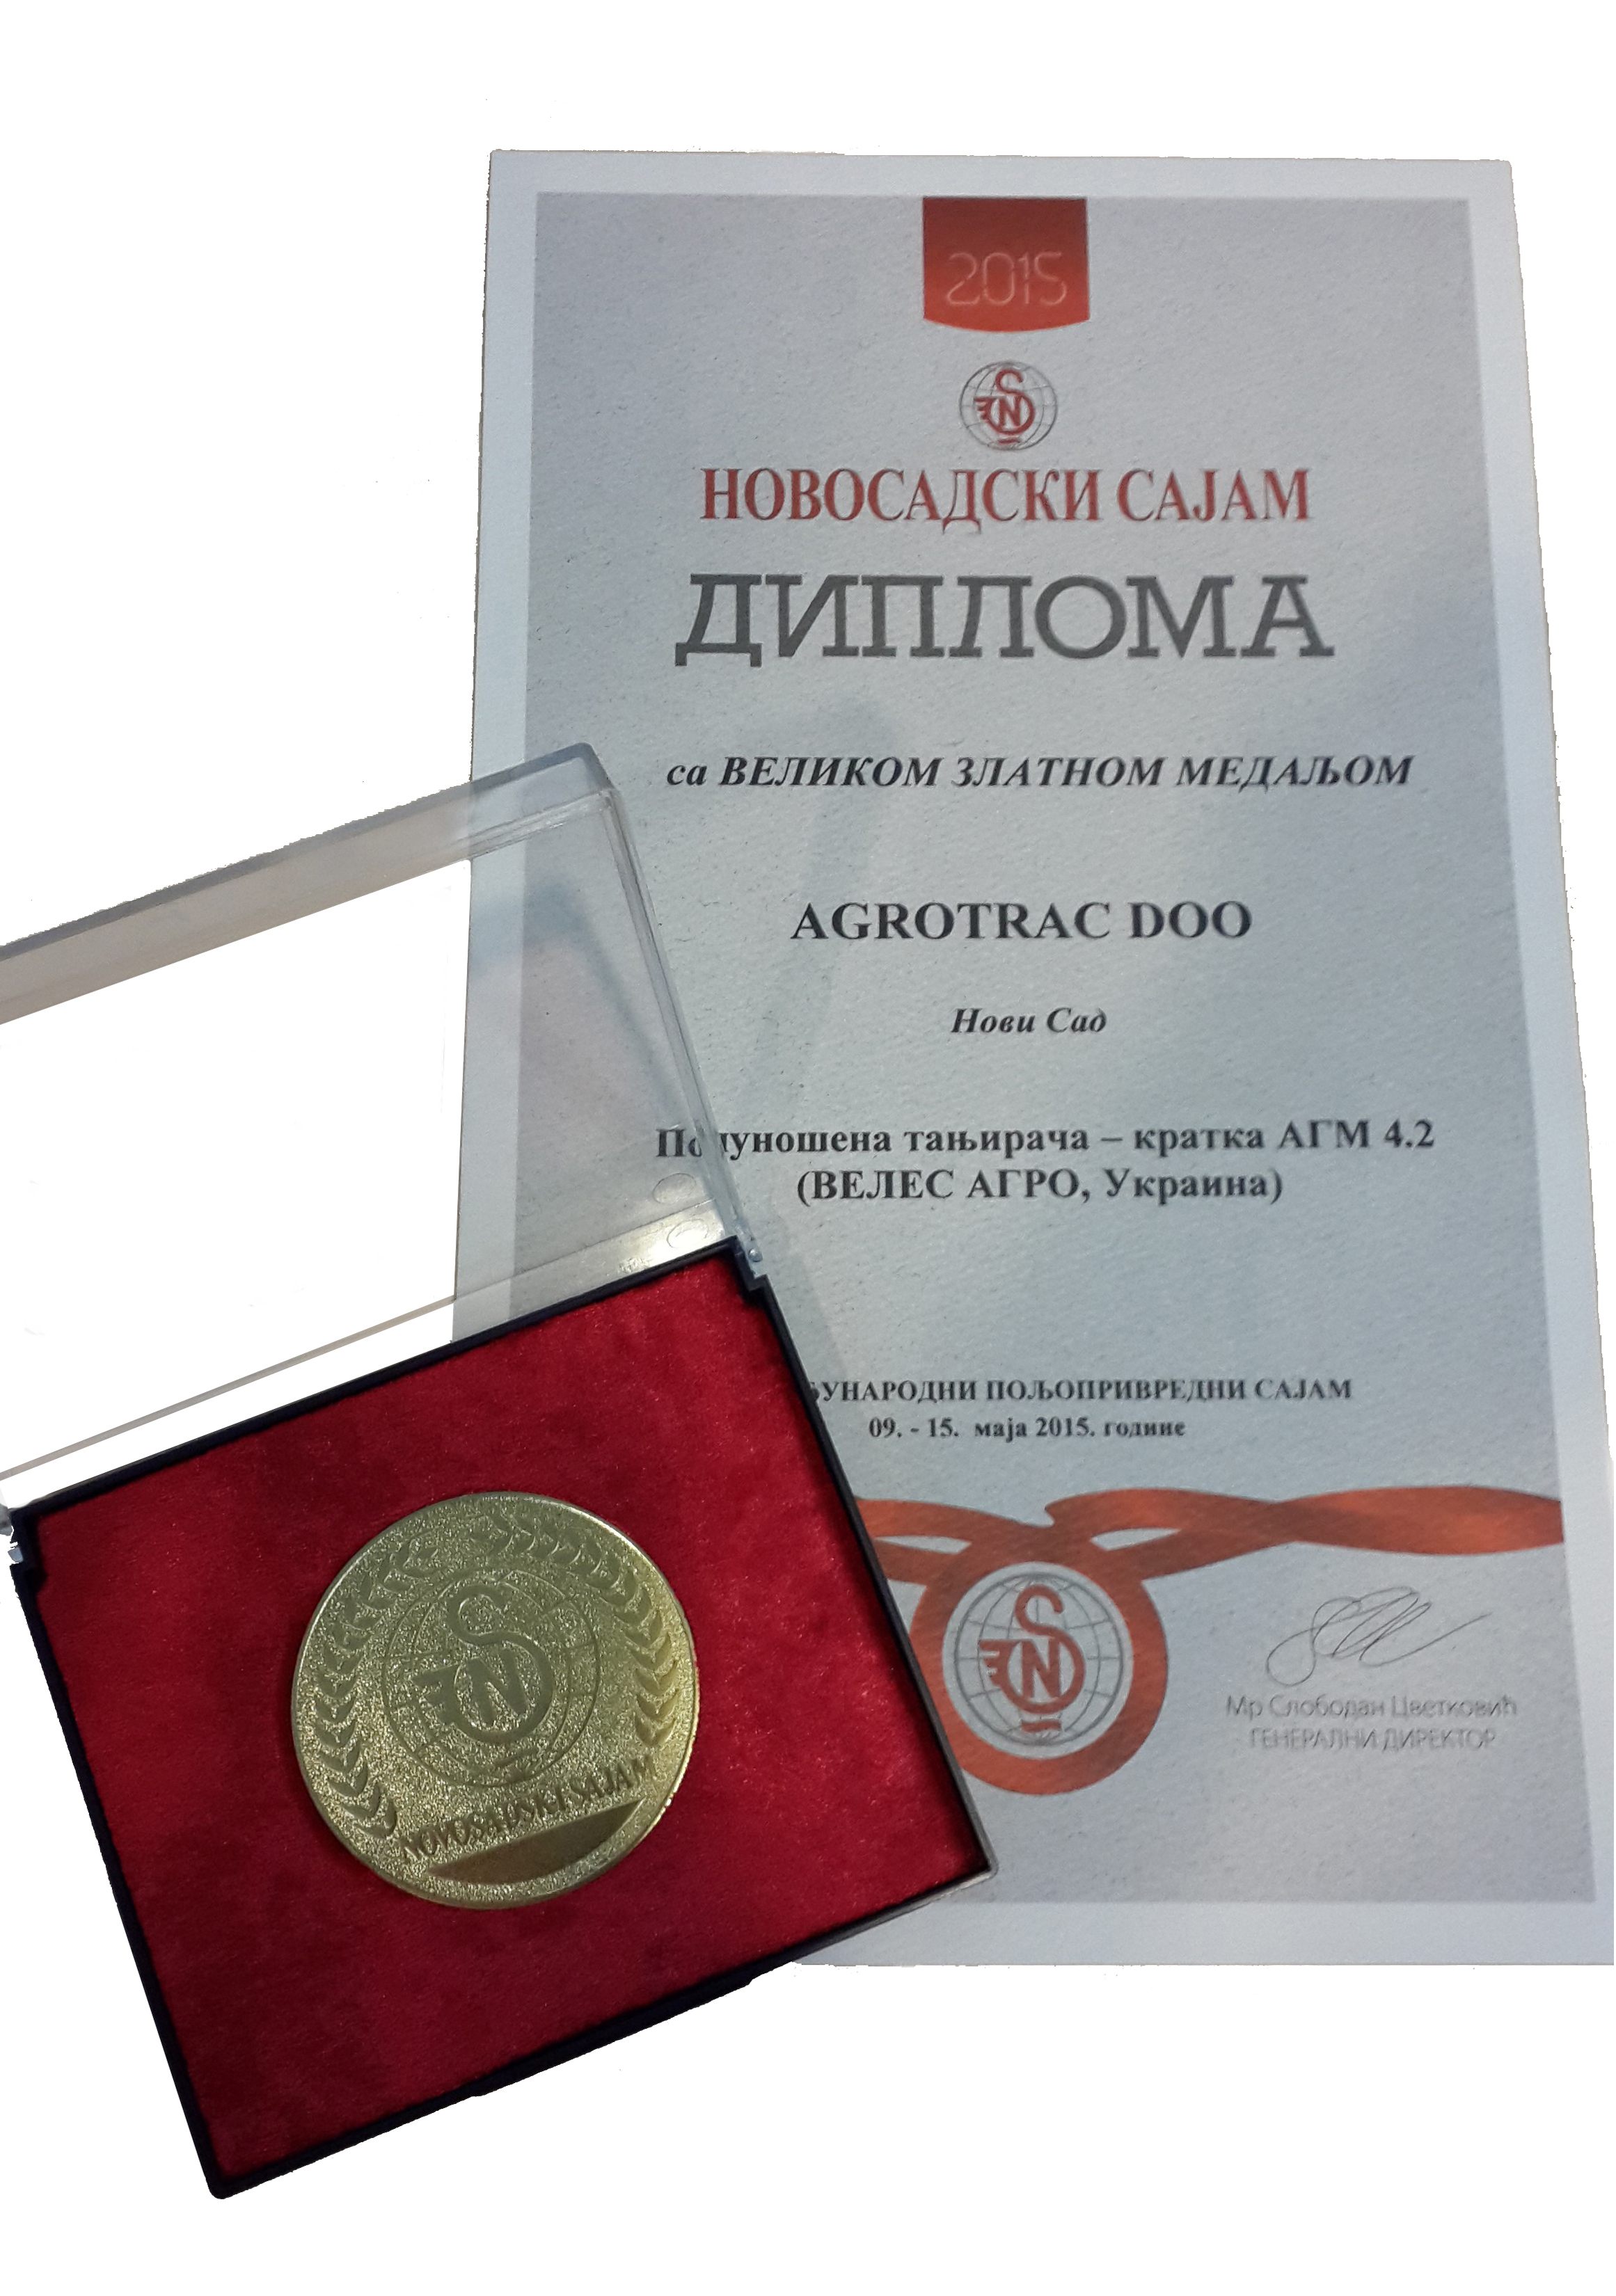 Золотая медаль награда в Сербии Велес-Агро